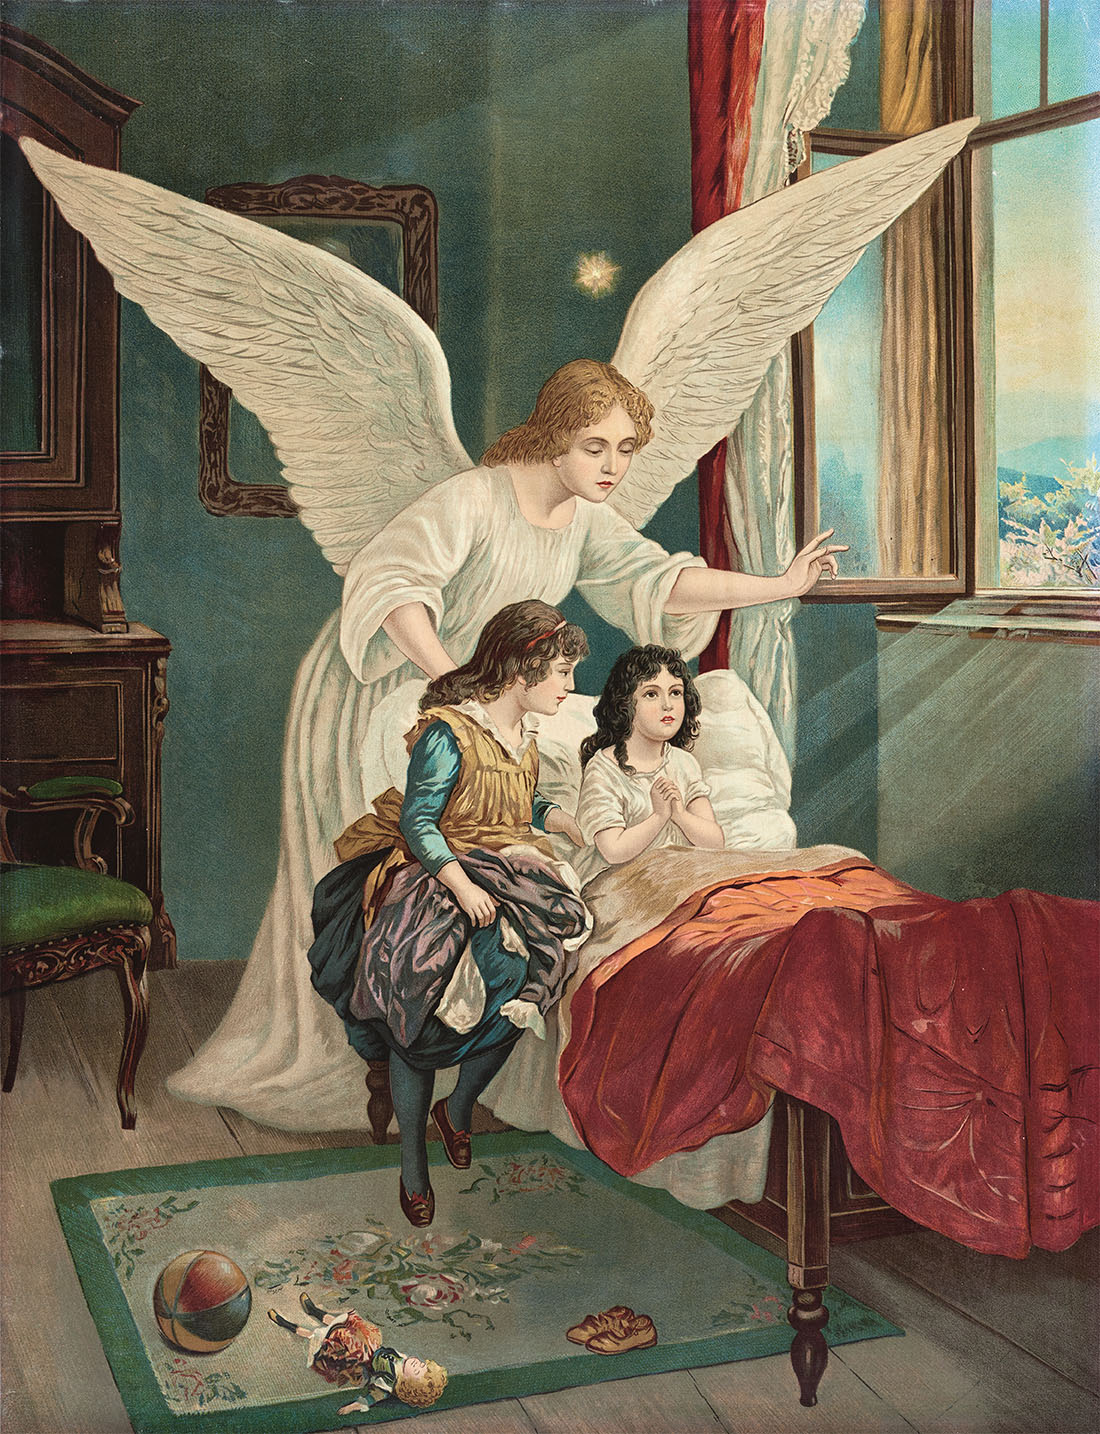 Le monde des anges s'expose au Musée d'Art et d'Histoire de Fribourg -   - Arts visuels